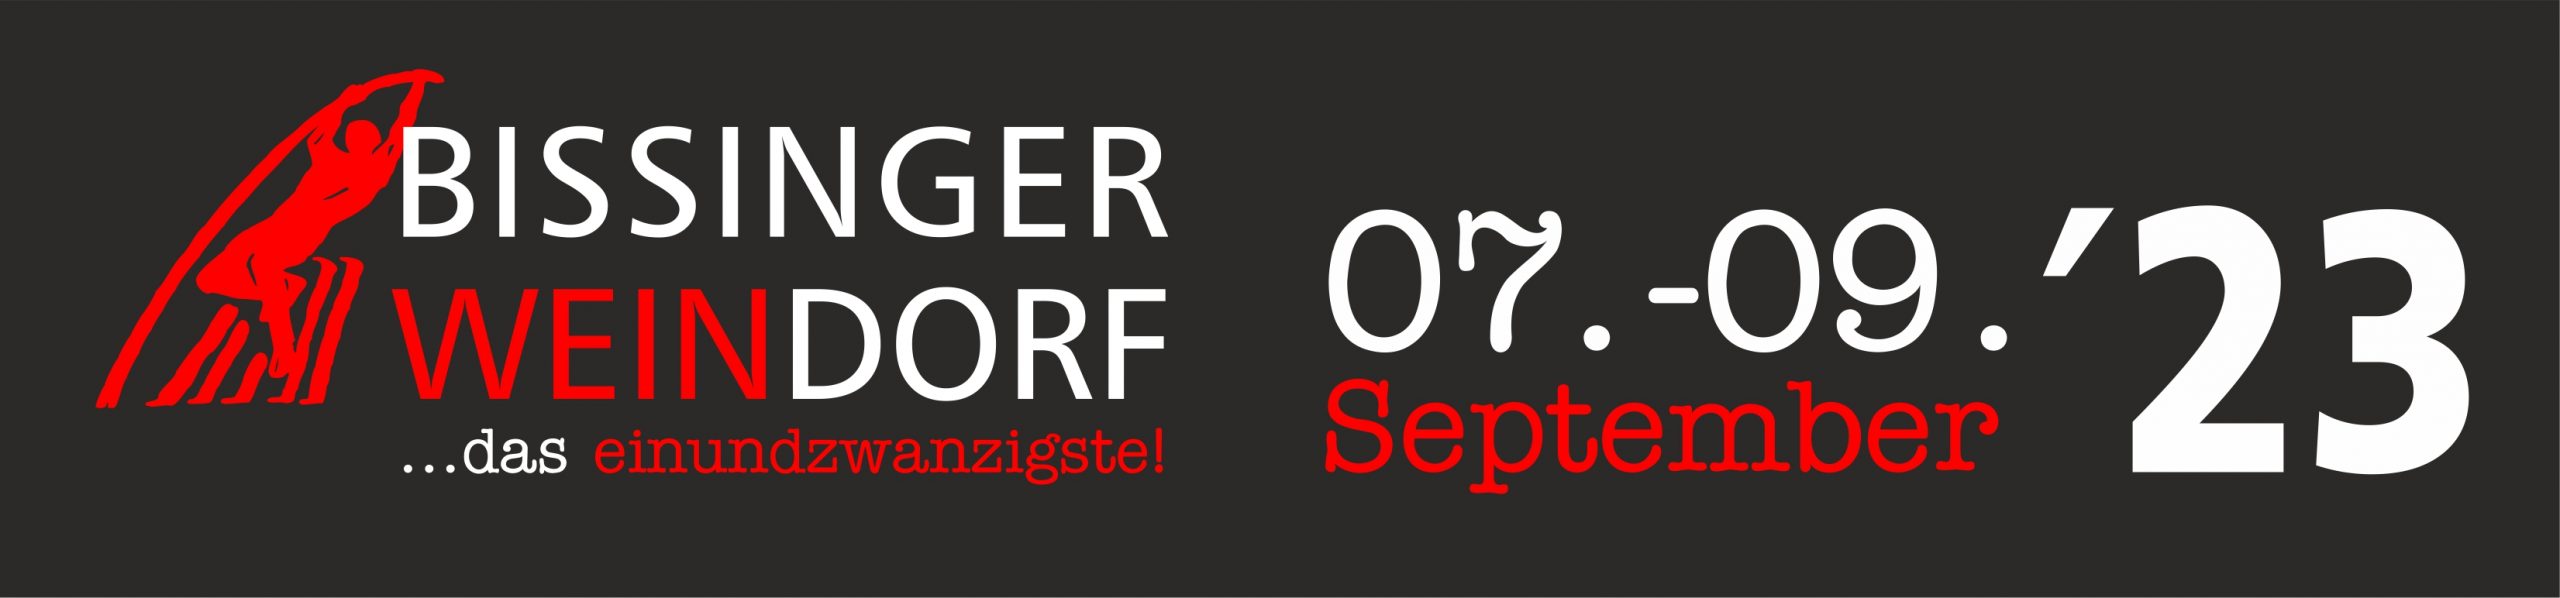 21. Bissinger Weindorf  vom 07. - 09. September am Bissinger Rathaus